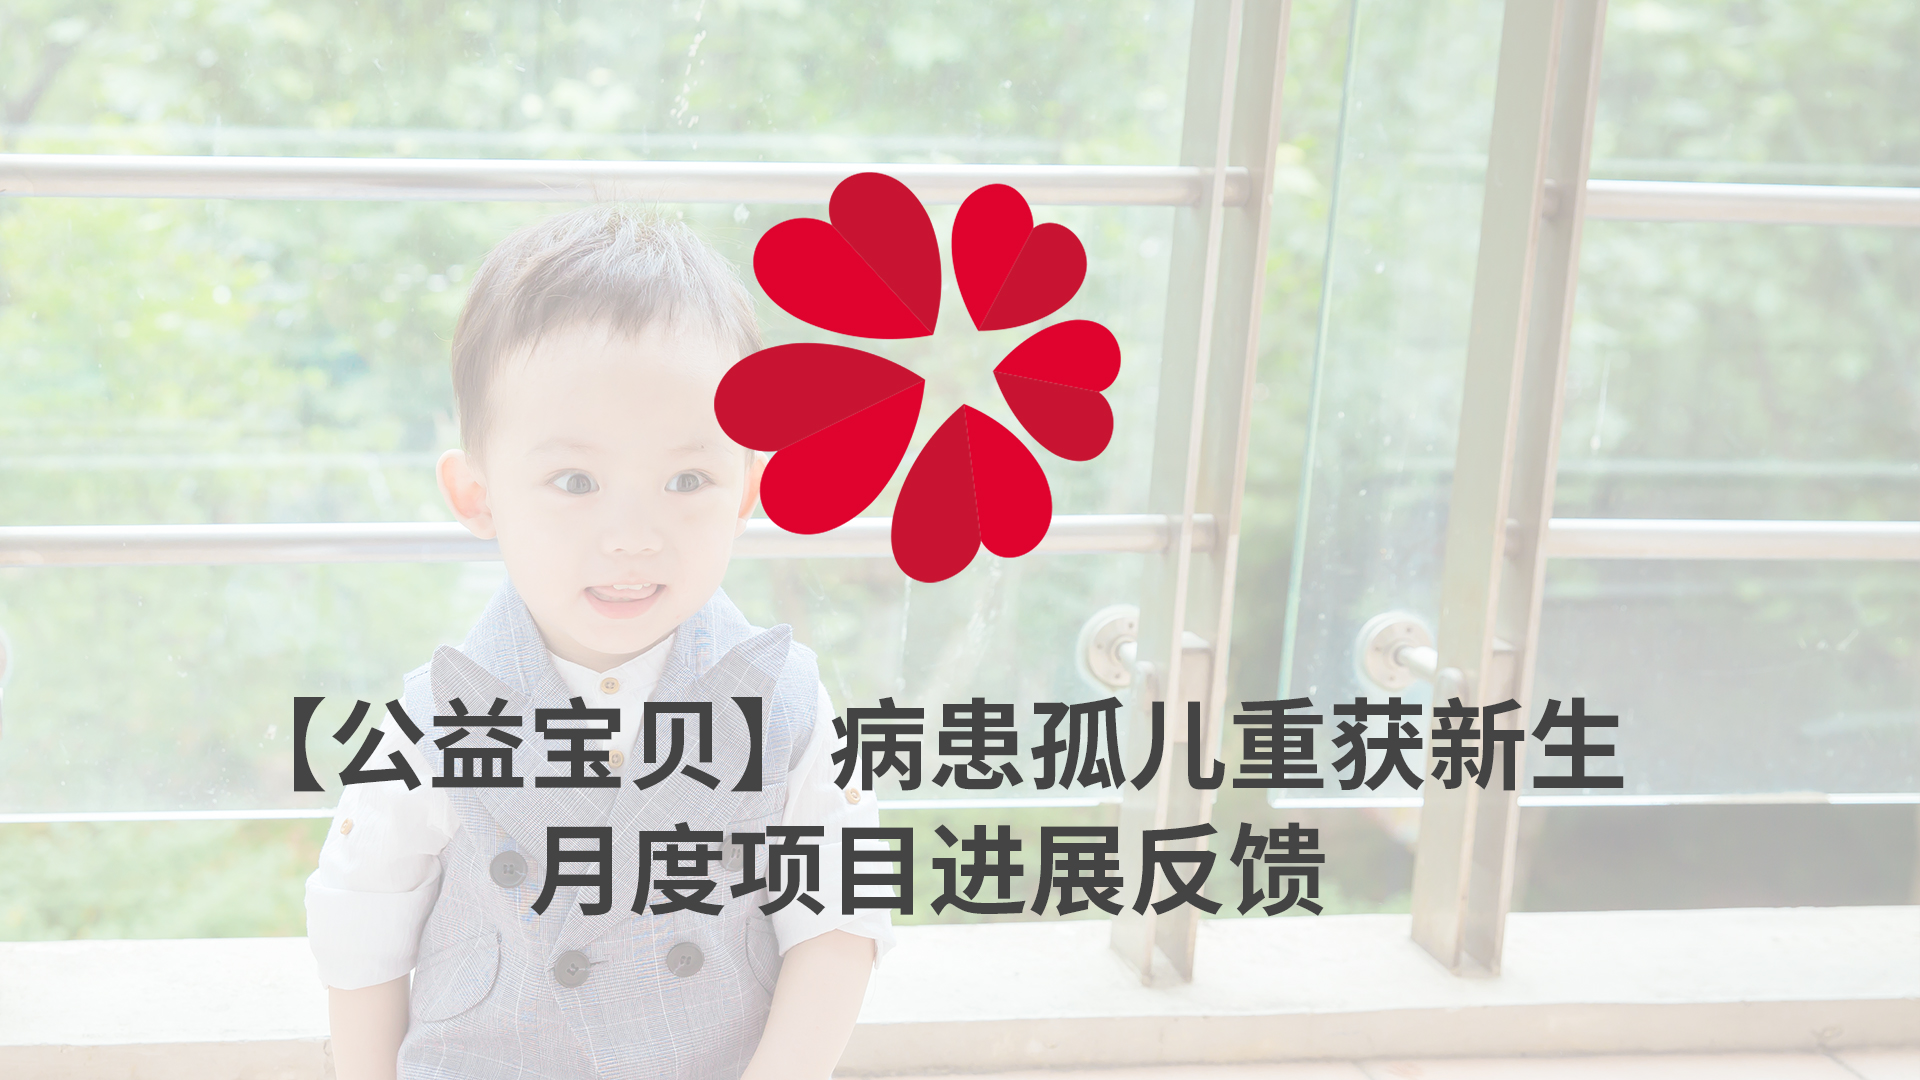 【XIN 益佰项目】病患孤儿重获新生 2023 年 6 月项目进展反馈